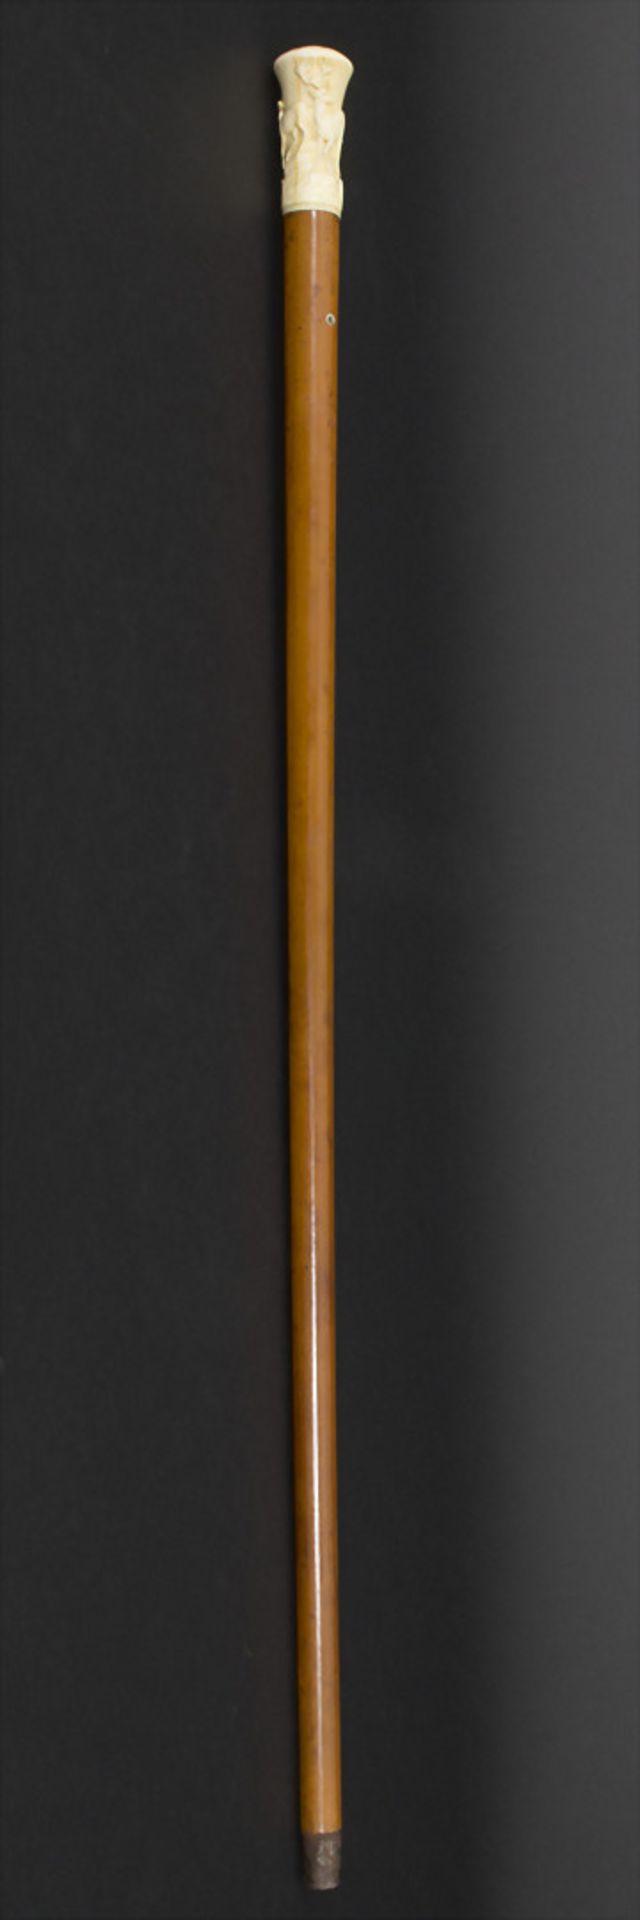 Gehstock mit Elfenbeingriff 'Hirsche' / A cane with ivory handle 'Deer', um 1880Material: - Bild 5 aus 5